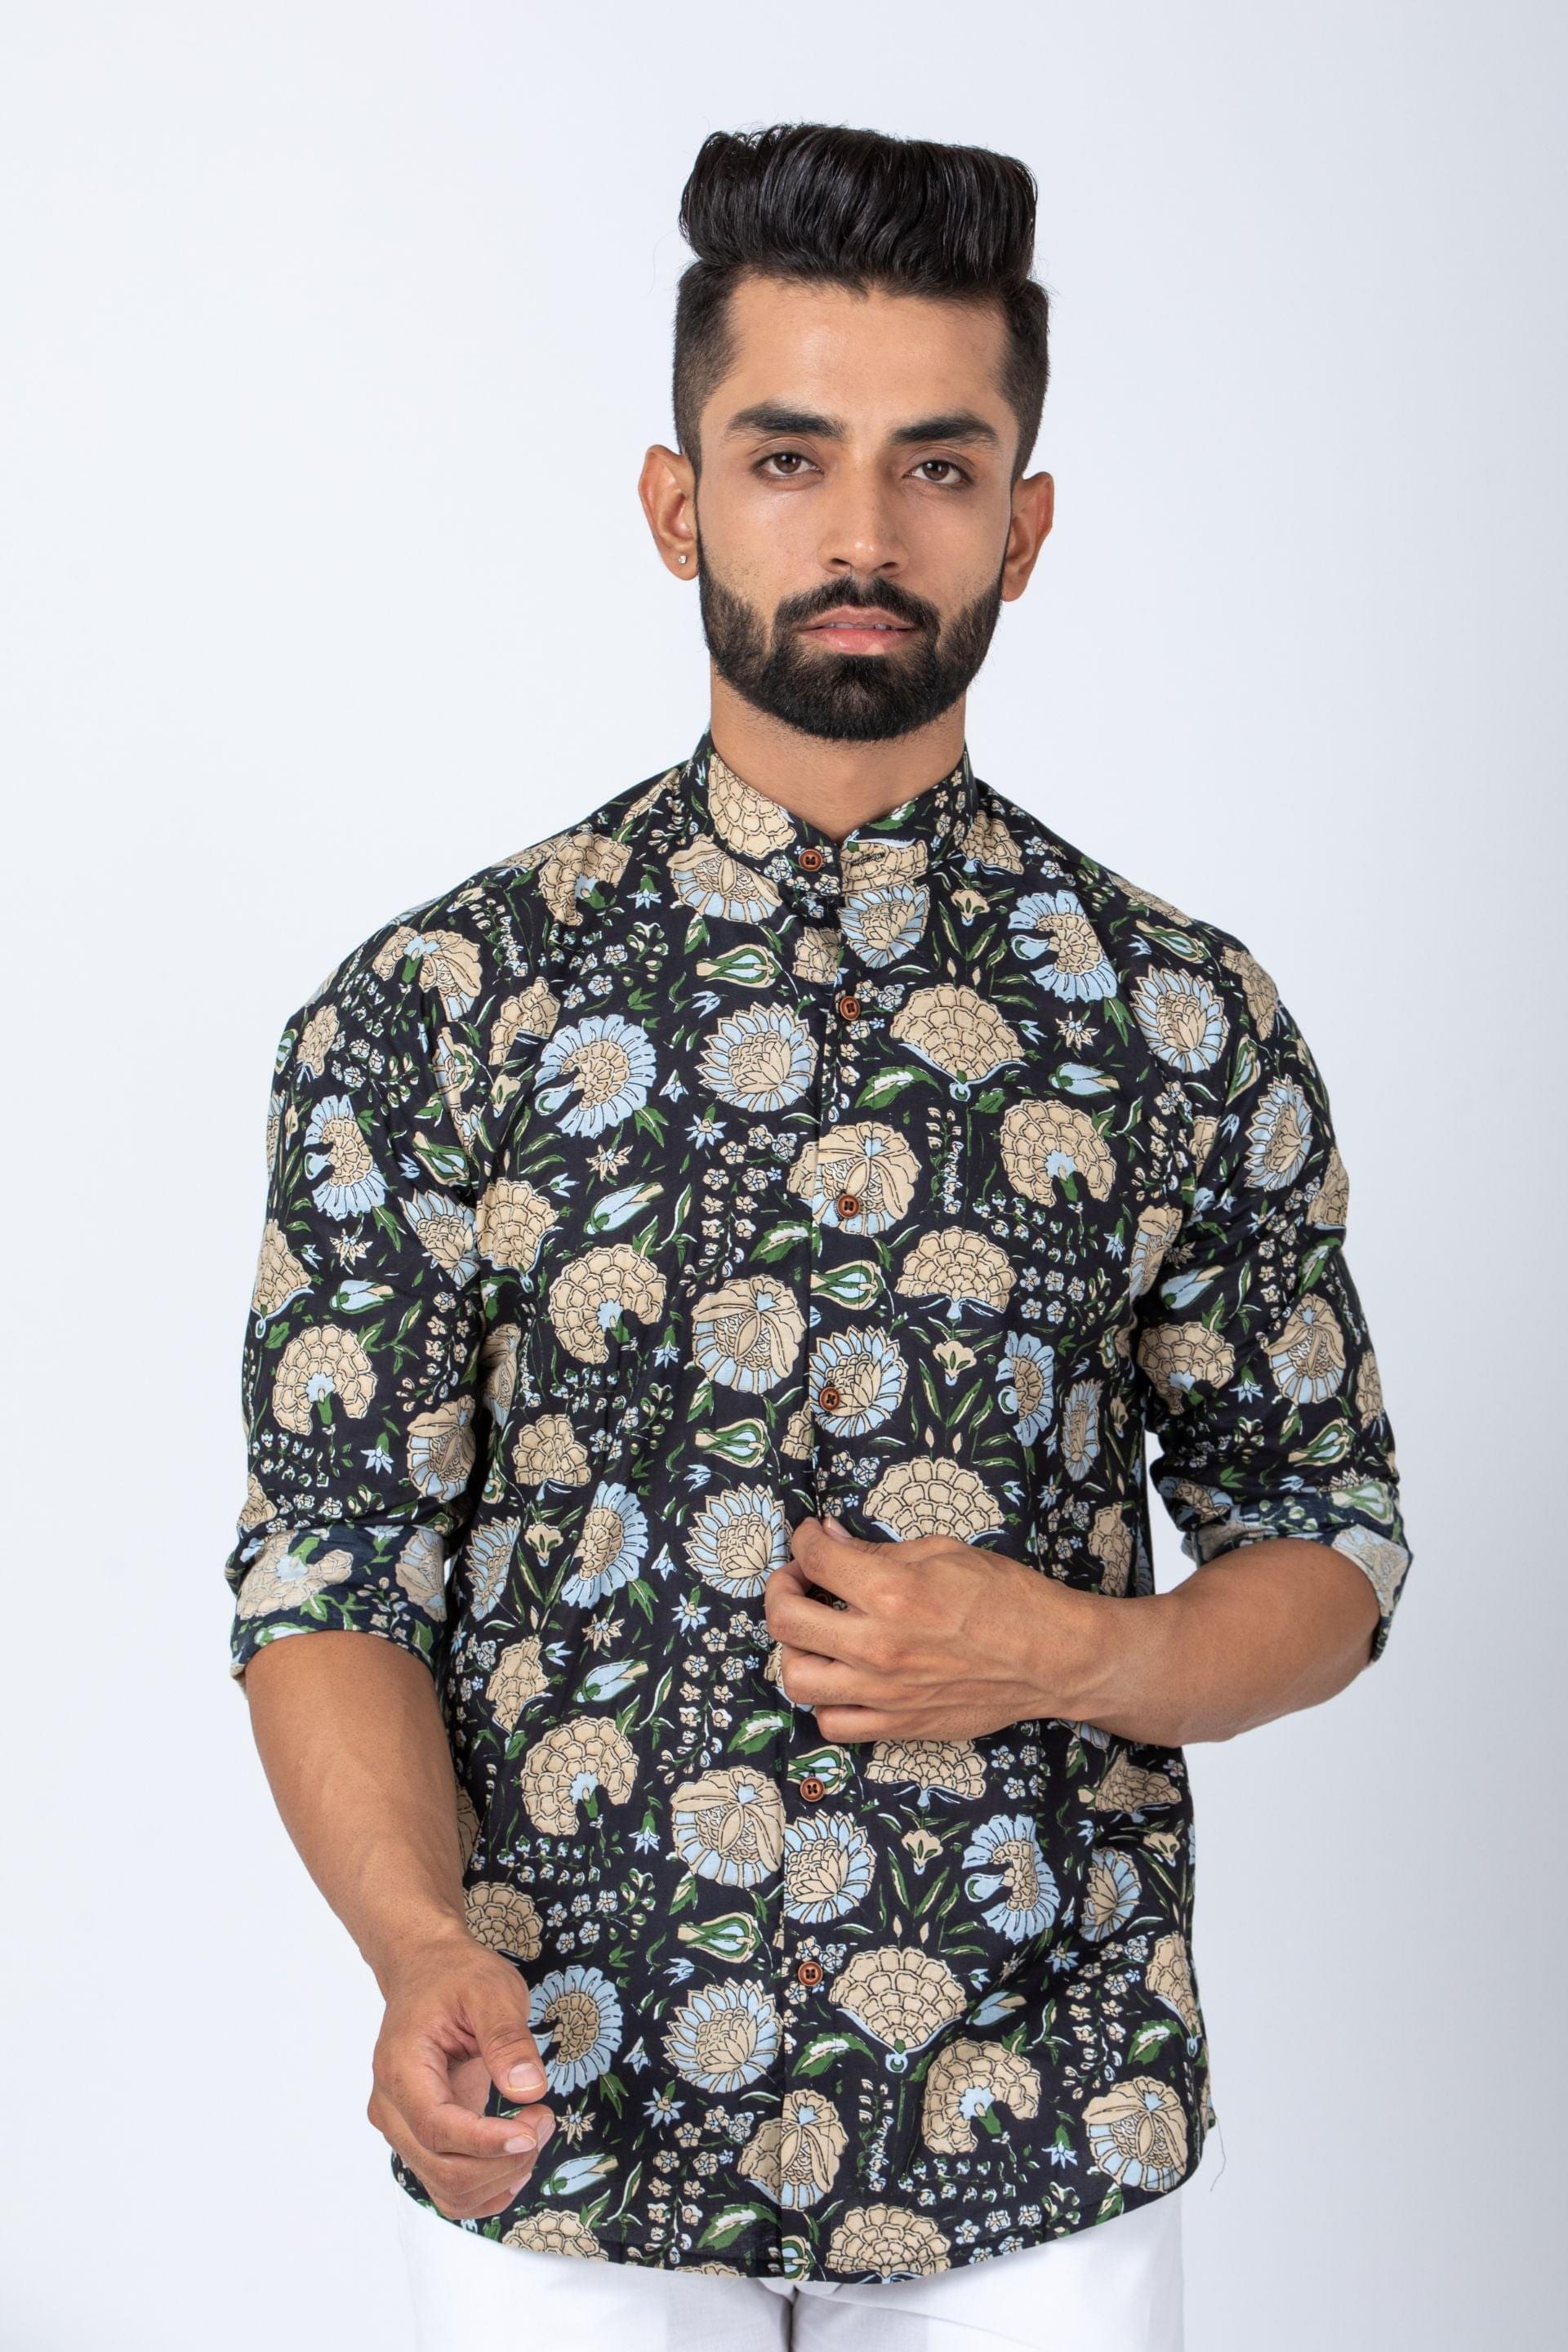 Firangi Yarn 100% Cotton Block Printed Full Sleeves Mandarin Collar Men's Shirt